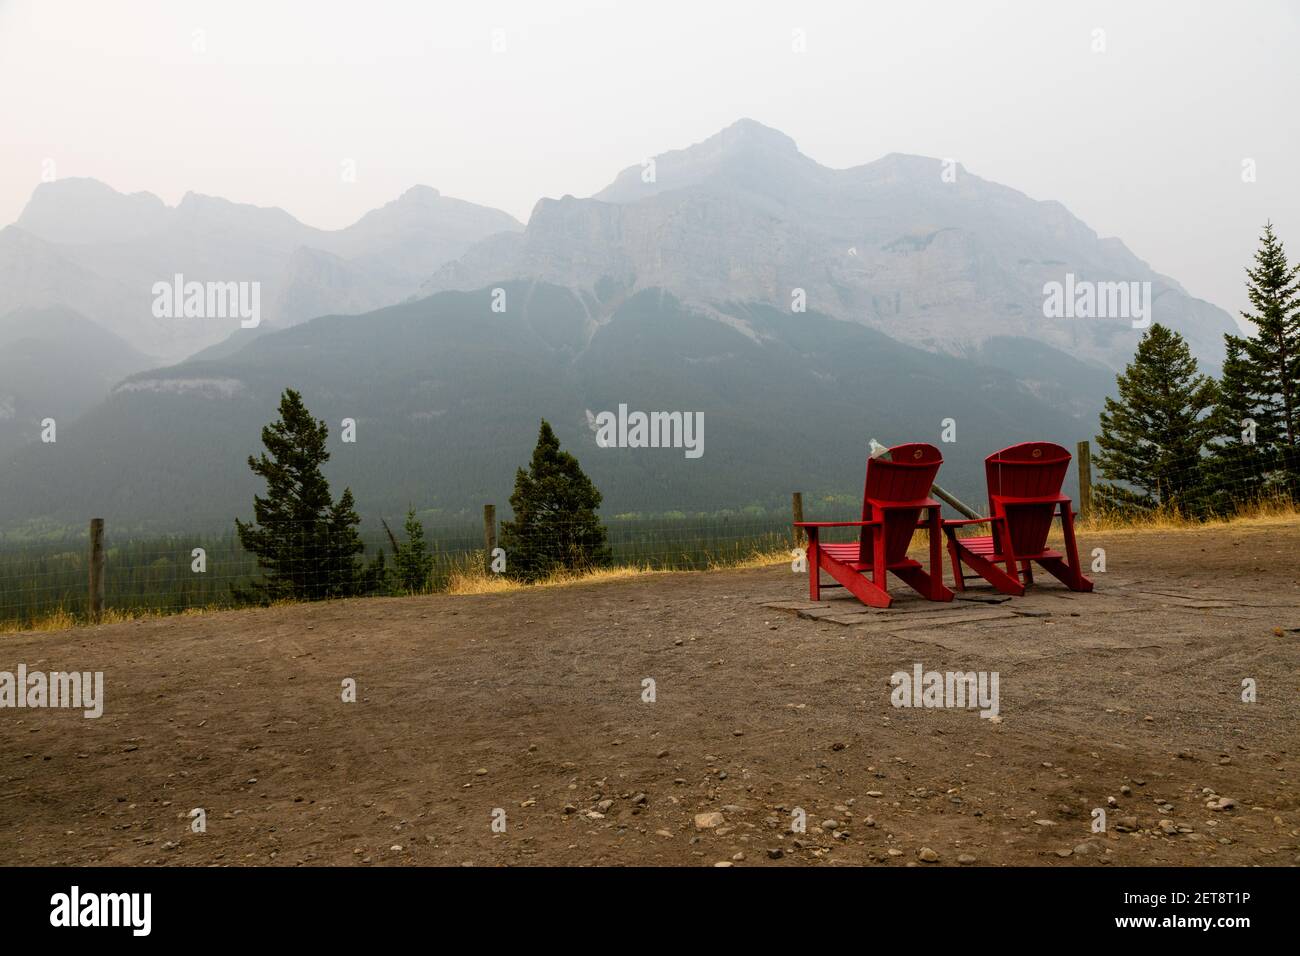 Chaises rouges Adirondack dans le parc national Banff, Canada avec des montagnes nuageux en arrière-plan. Banque D'Images